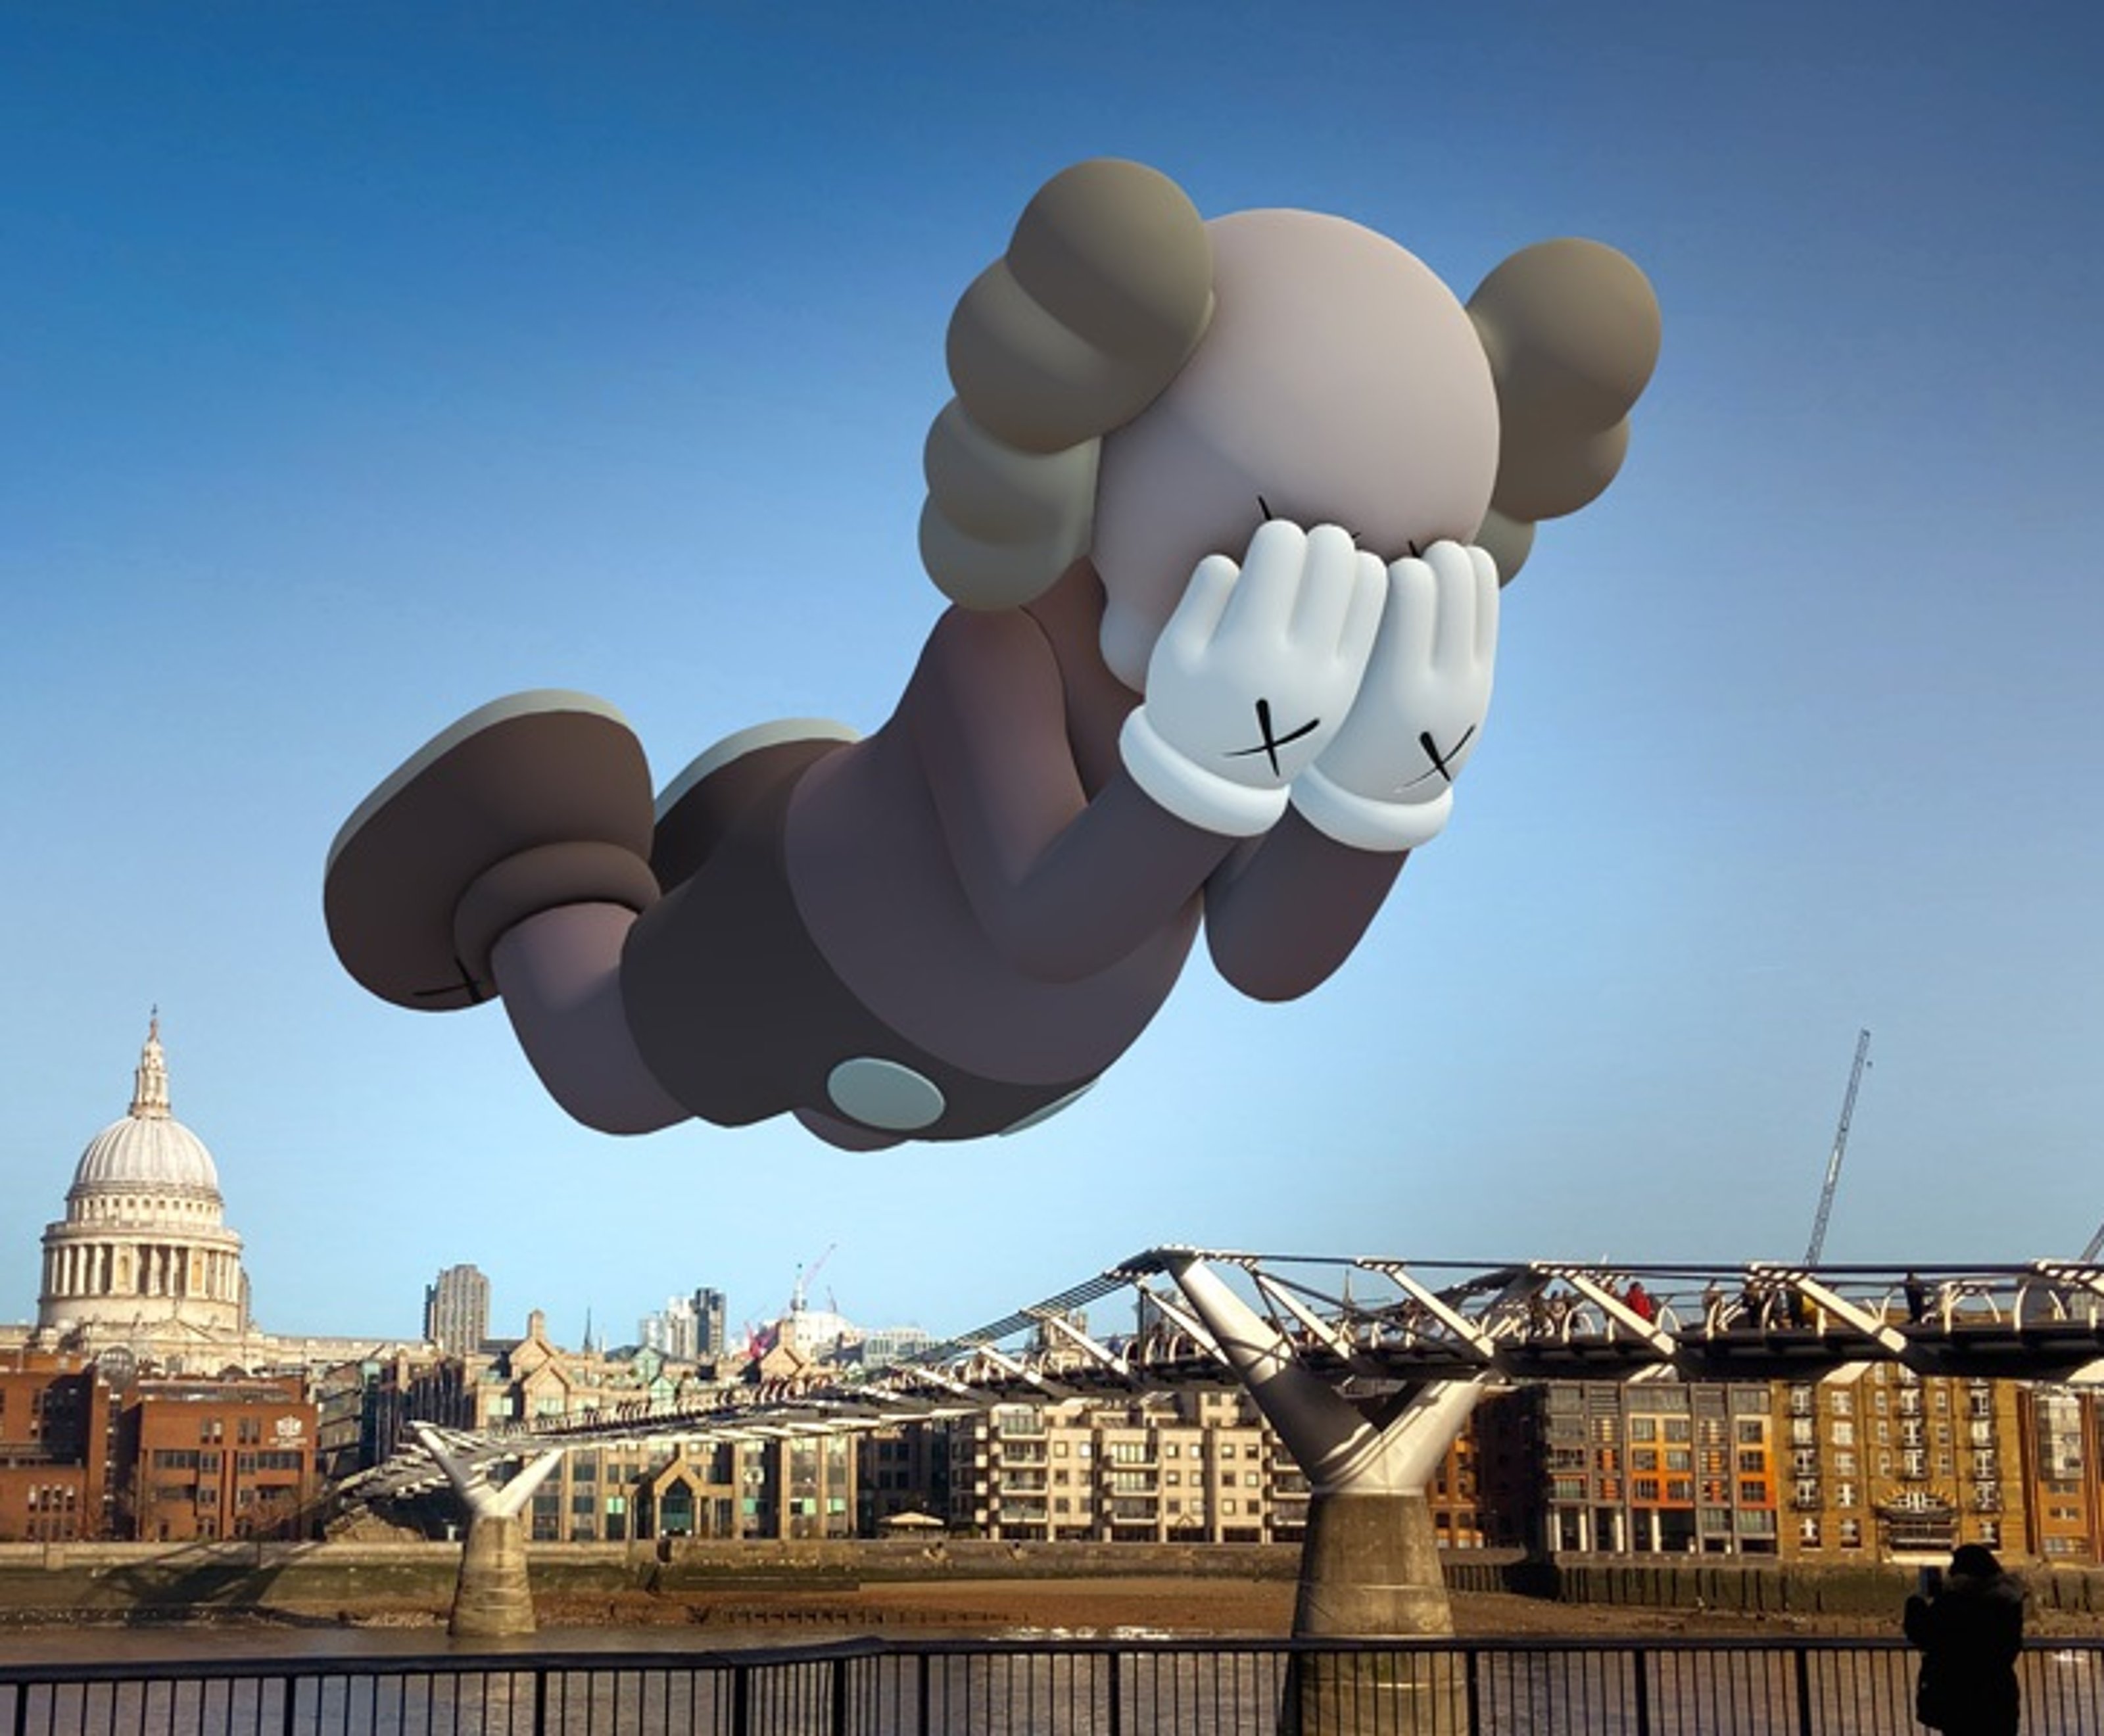 KAWS companion brown figure virtually floating over city.